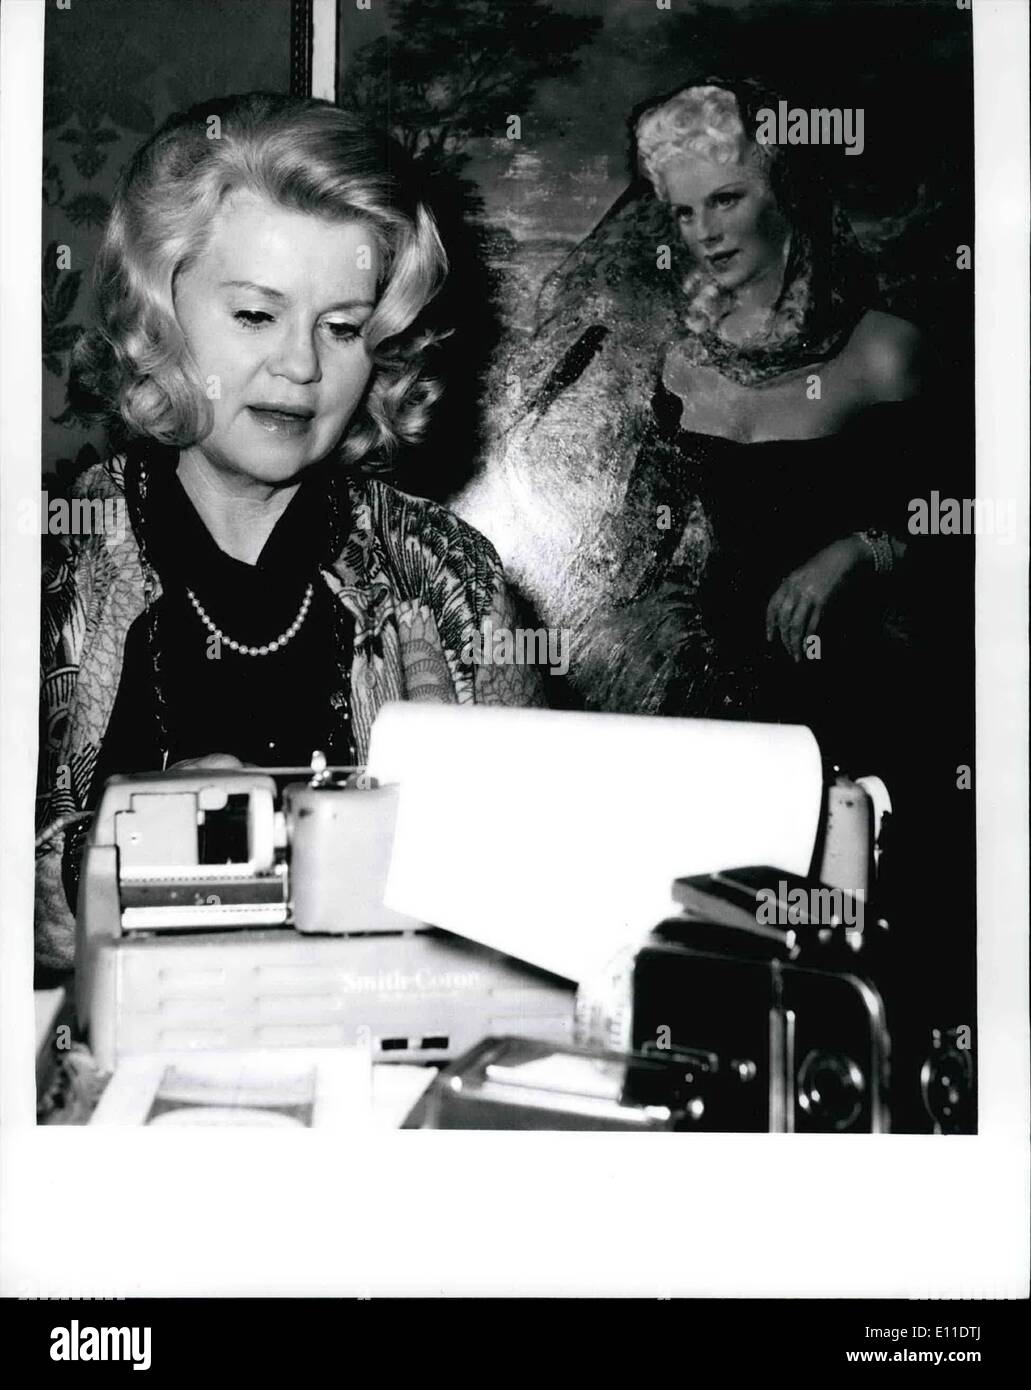 Septiembre 05, 1977 - 5.9.77: 65. Cumpleaños de Kristina Soderbaum celebra su 65° cumpleaños el 5 de septiembre de 1977, la famosa actriz alemana y fotógrafo Kristina Soderbaum (Kristine Soderbaum - nuestra imagen). El artista nacido en Stcokholm, jugado el jefe de piezas en films, producidos principalmente por su marido Veit Iflarlan, quien murió en 1964 - como ''Jud sub'', .Die Goldene Stadt'' (de las cuales ella fue premiada como mejor actriz en la Bienal de Venecia en 1942), KOLBERG Opfergang''''.Die Reise nach Tilsit'', ''Der grobe Konig. etc, y después de la Segunda Guerra Mundial en la película ''Verrat un Deutschland Foto de stock